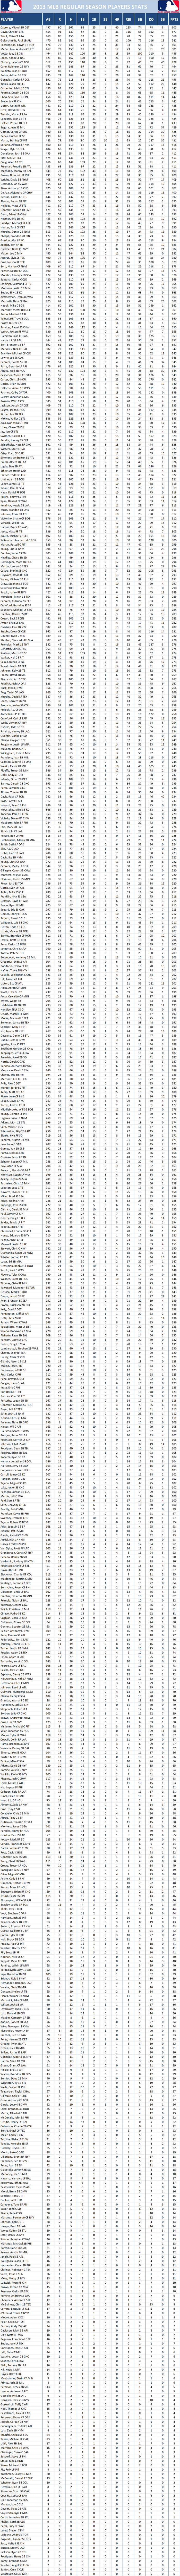 2013 Major League Baseball Pool Season Player Stats